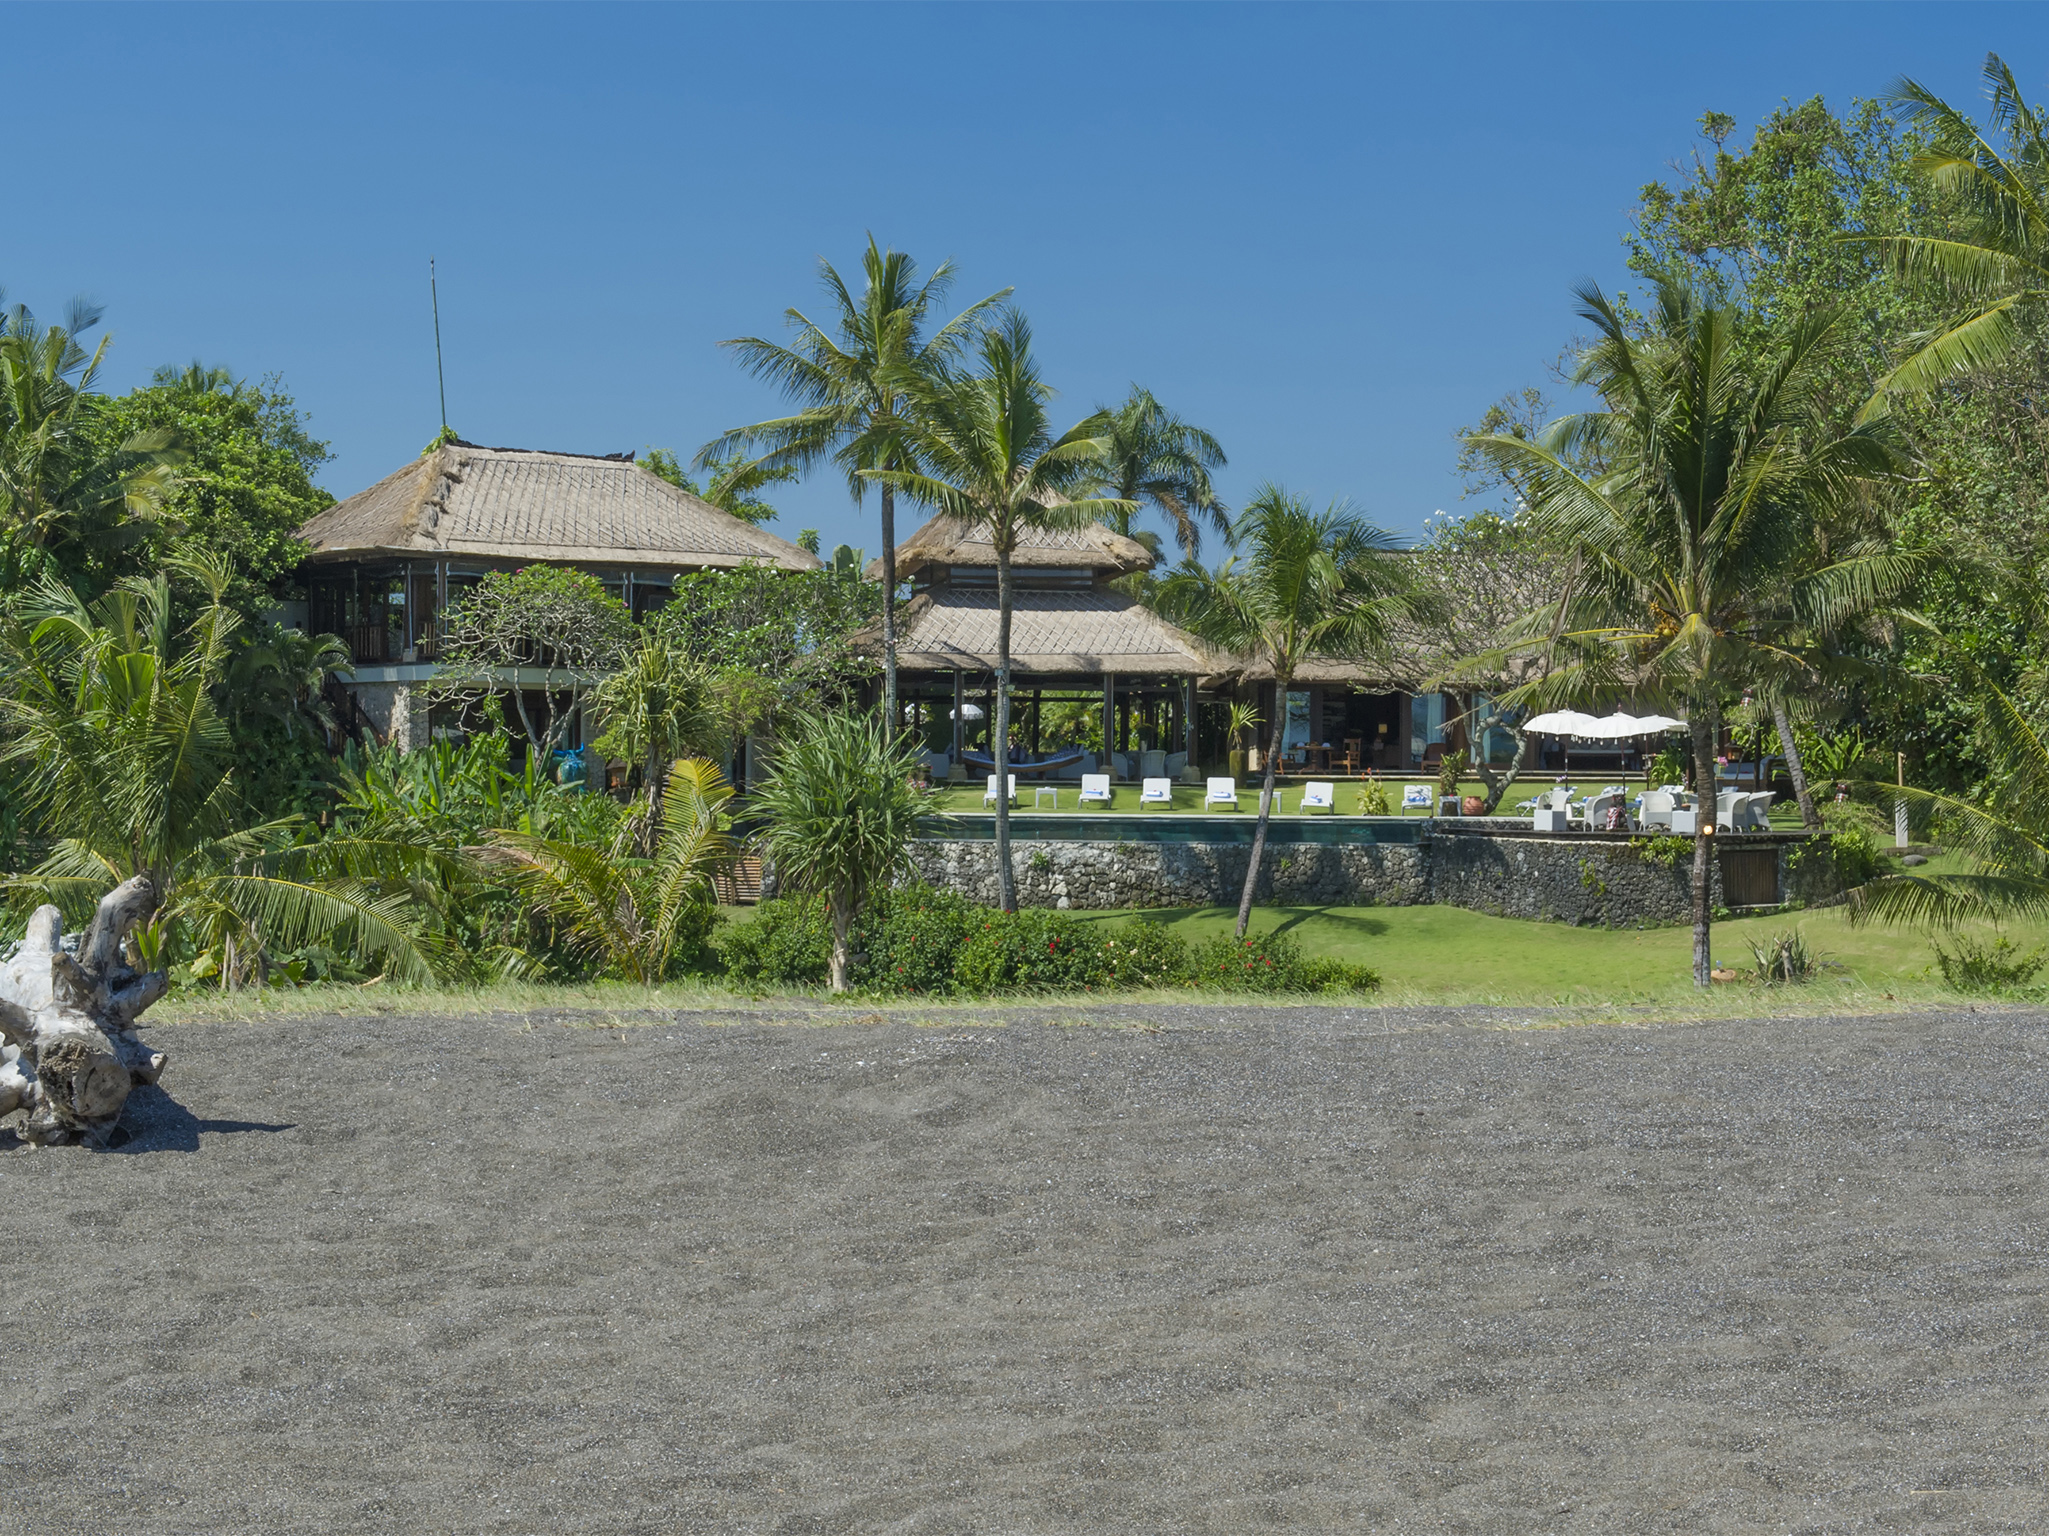 Villa Sungai Tinggi - Beach and villa view - Sungai Tinggi Beach Villa, Canggu, Bali